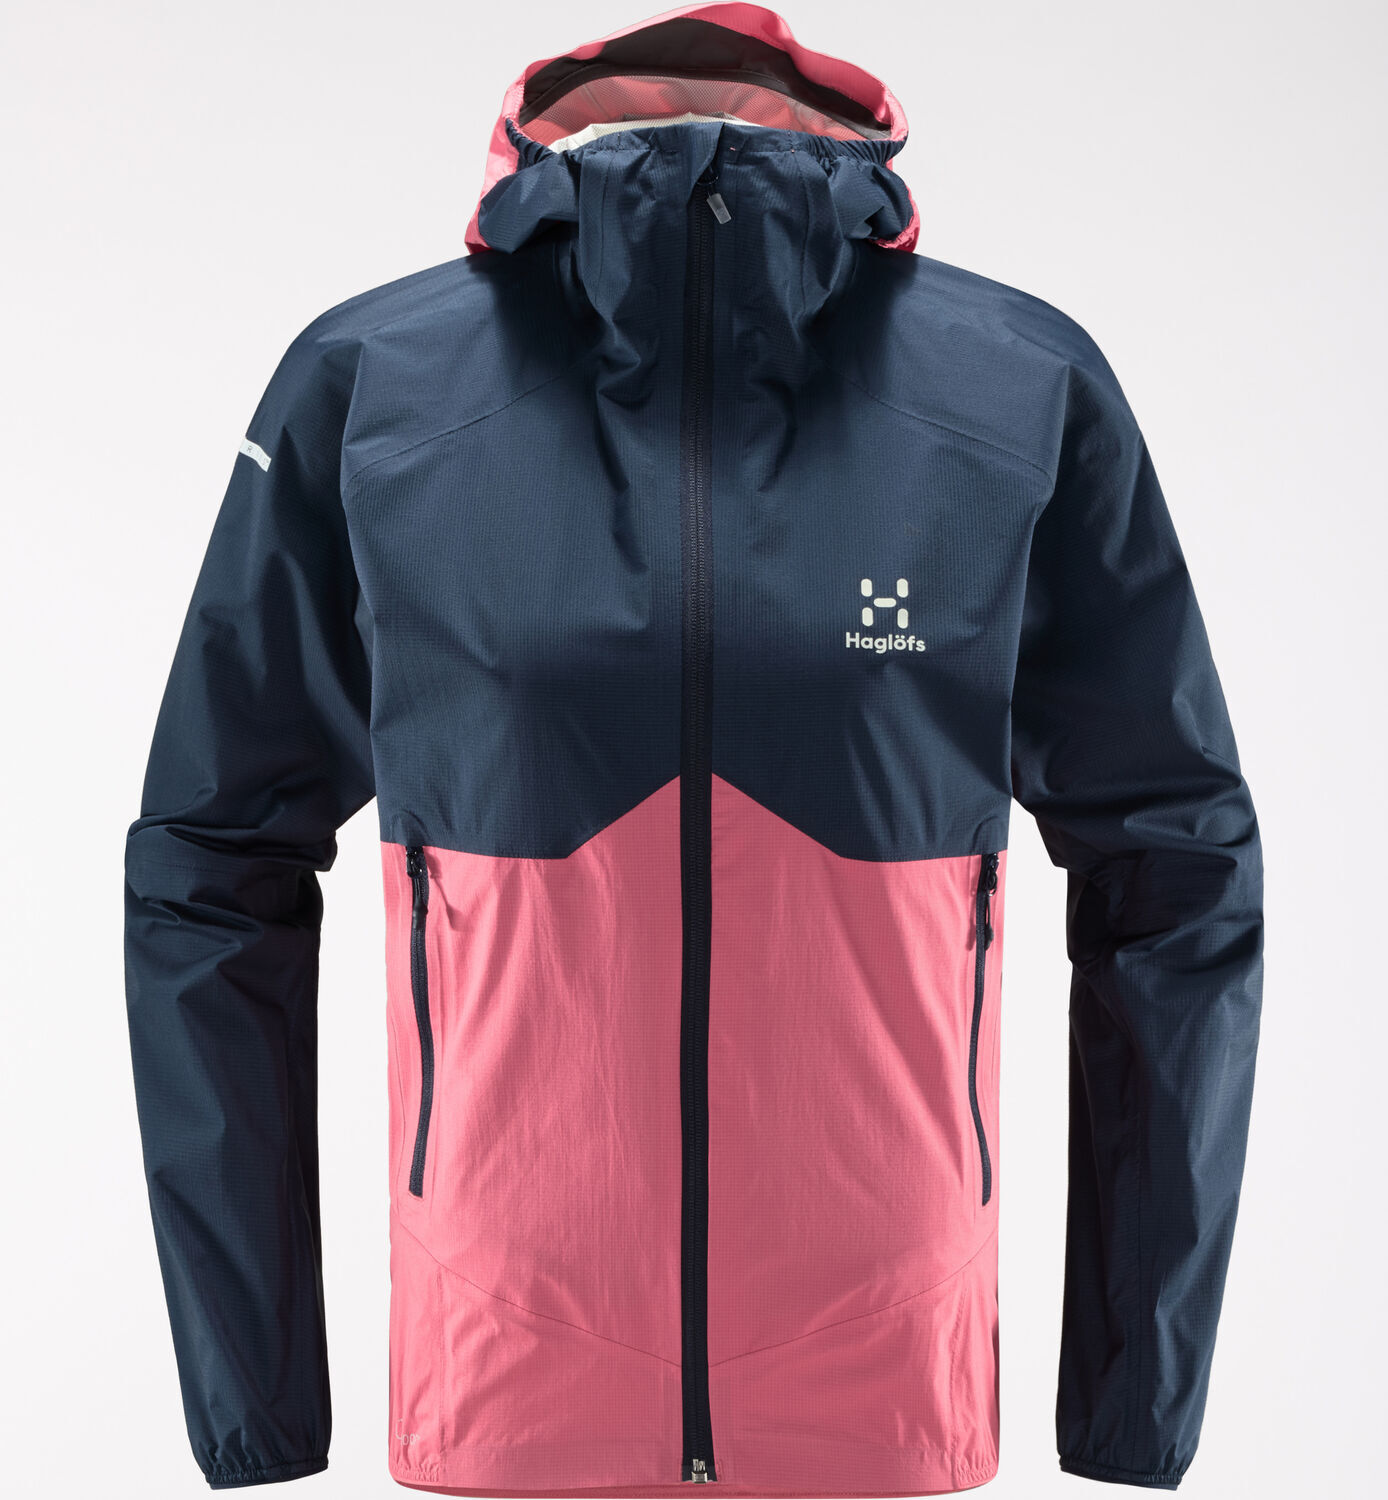 Haglöfs L.I.M PROOF Multi Jacket - Waterproof jacket - Women's